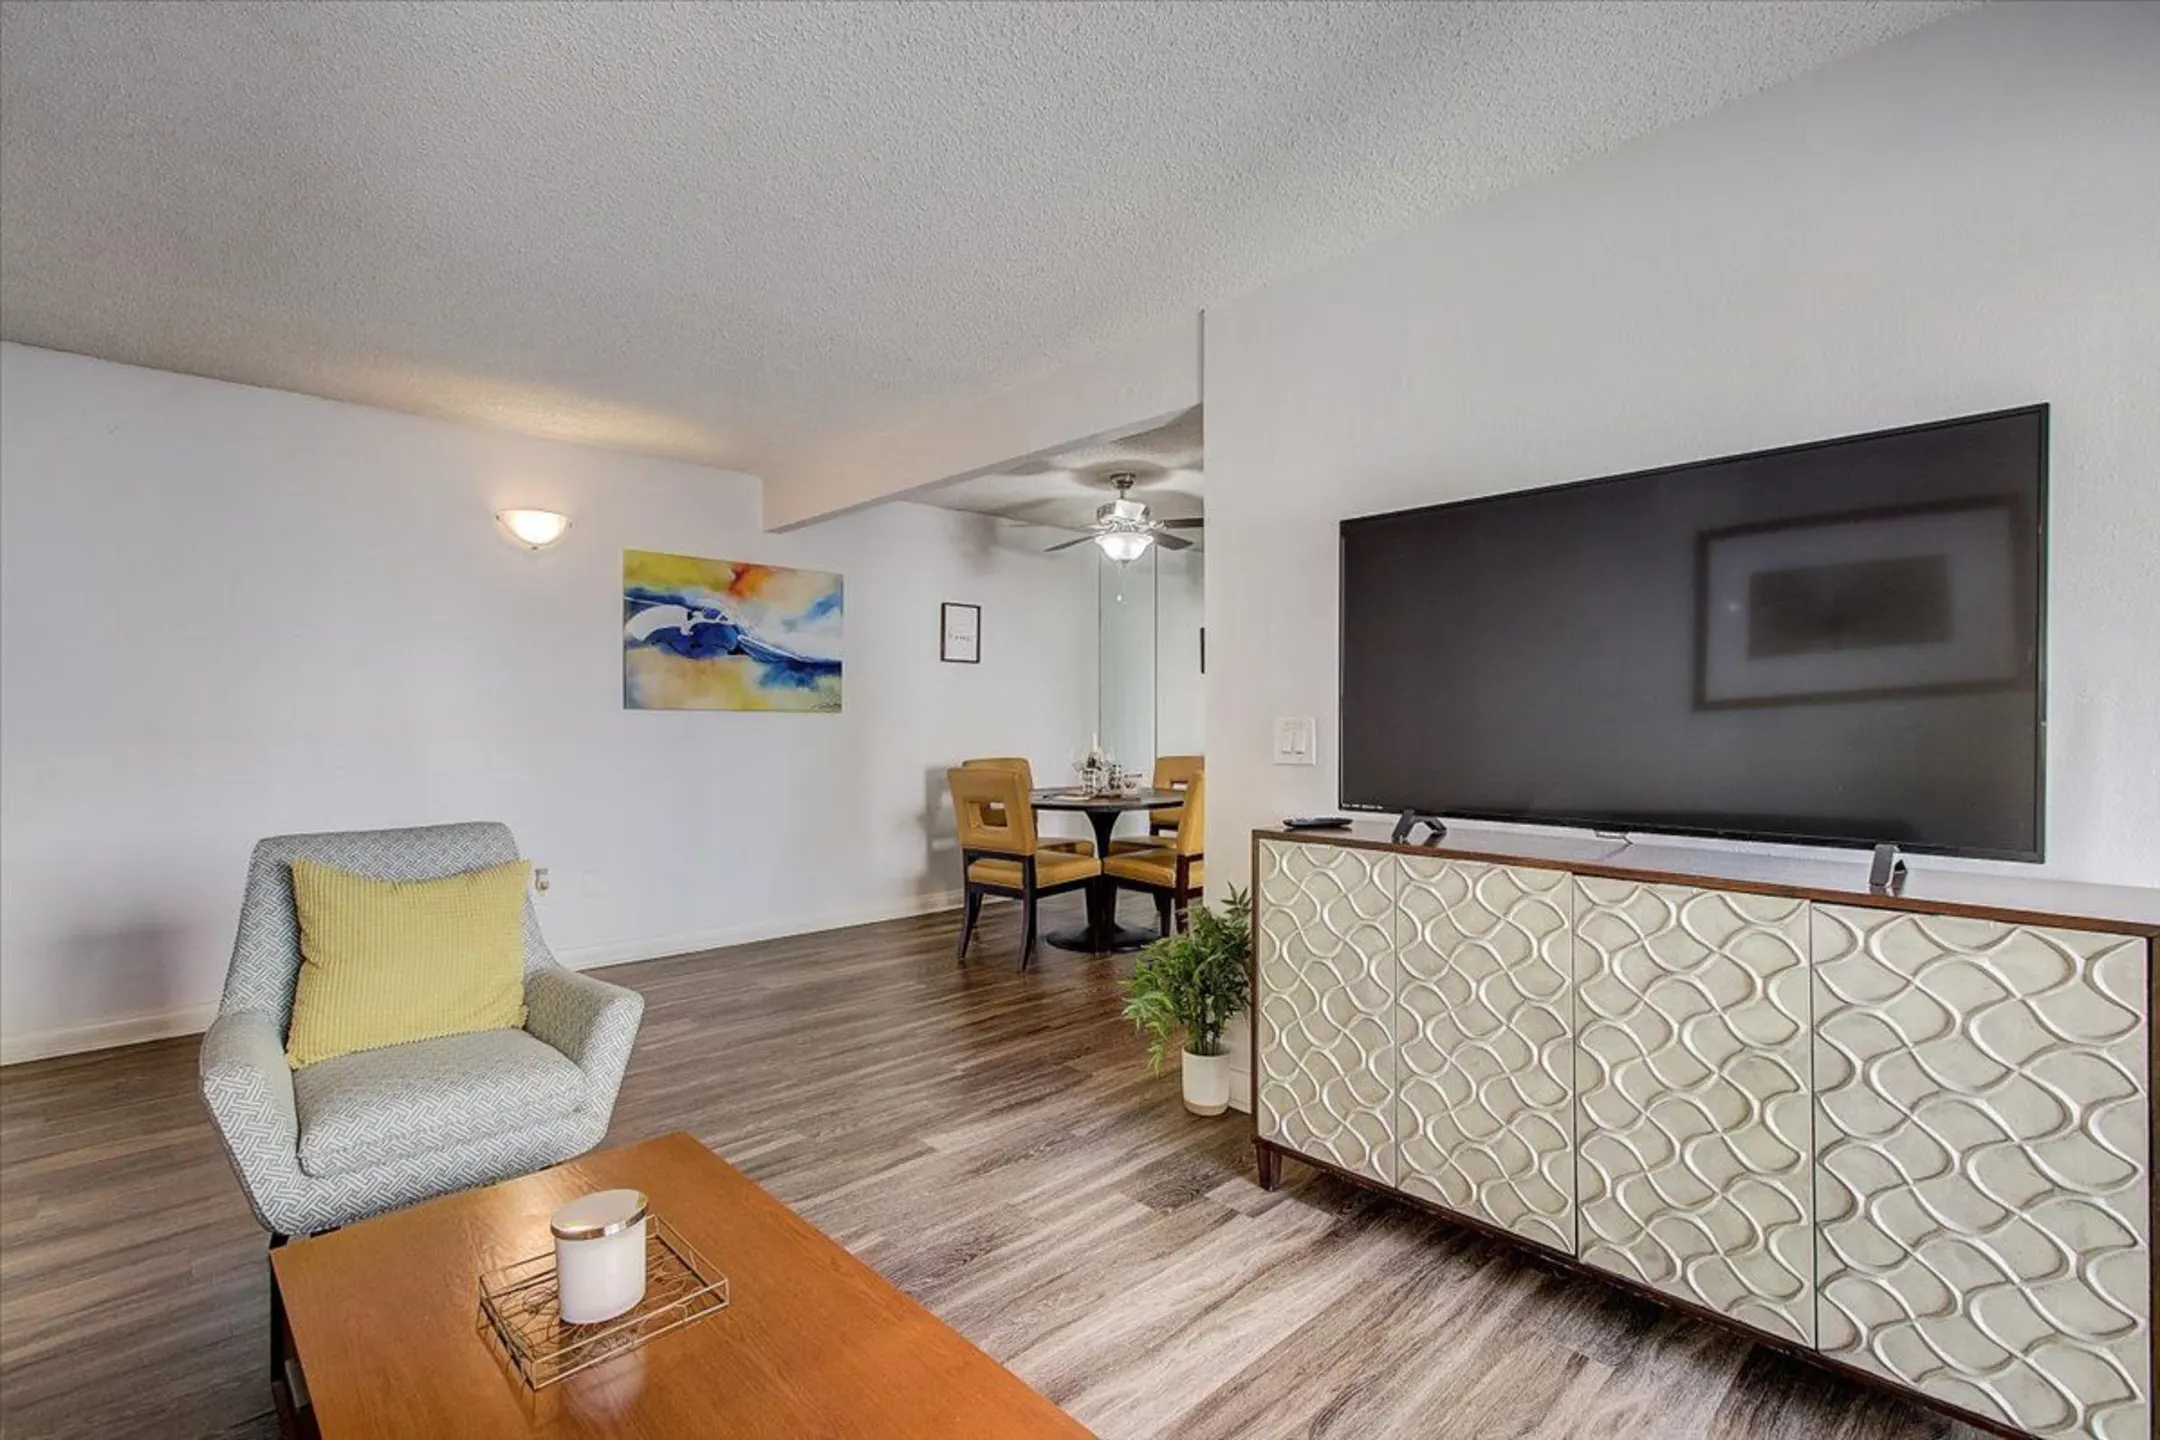 Living Room - El Cordova Apartments - Carson, CA